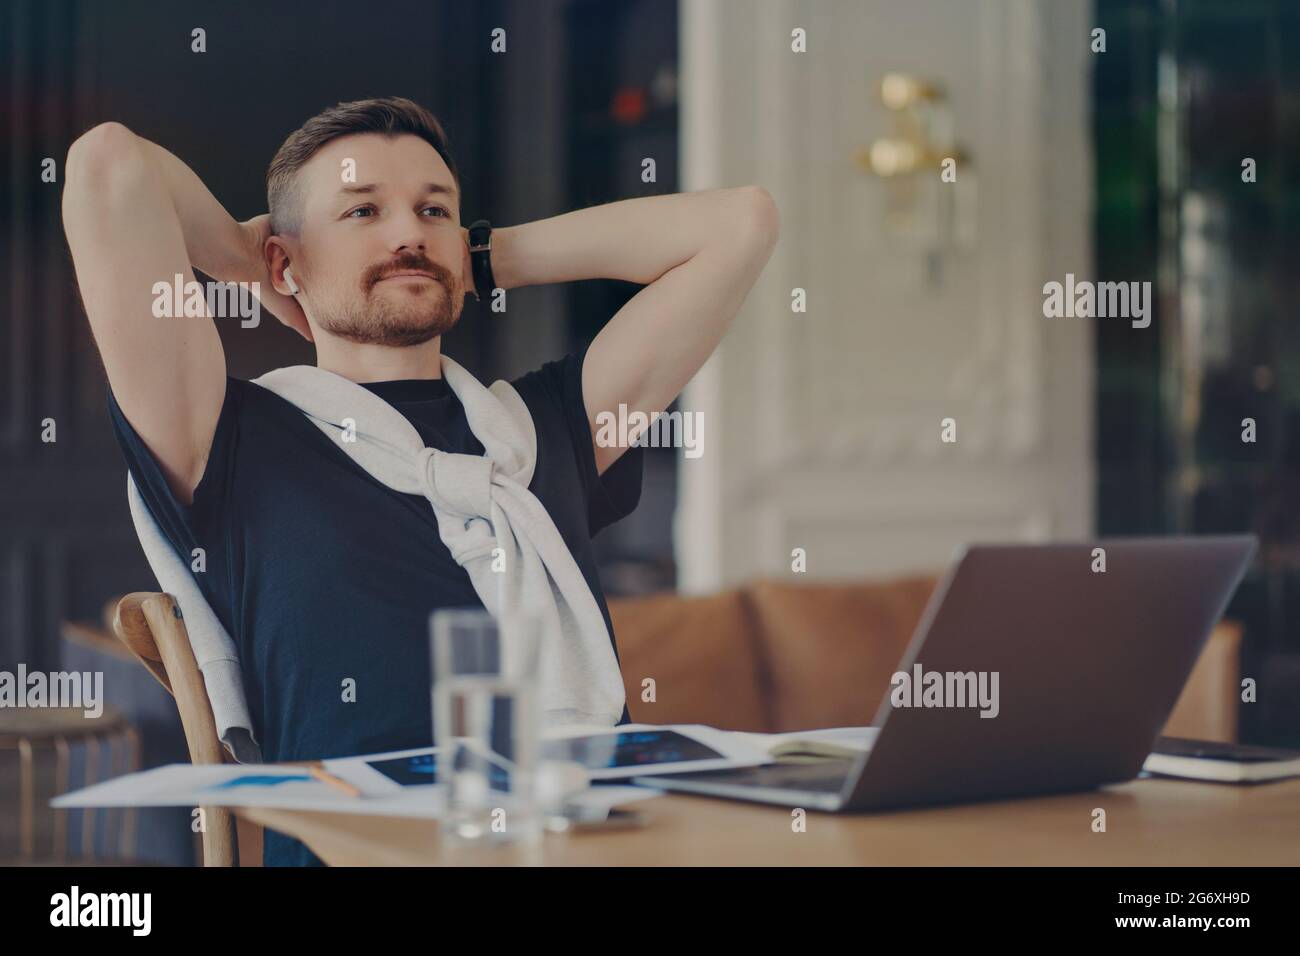 Nachdenklicher bärtiger Mann denkt über die Aufgabe nach hält die Hände hinter dem Kopf sitzt auf dem Schreibtisch mit modernen Gadgets denkt über die Distanz Job konzentriert sich in der Ferne Stockfoto